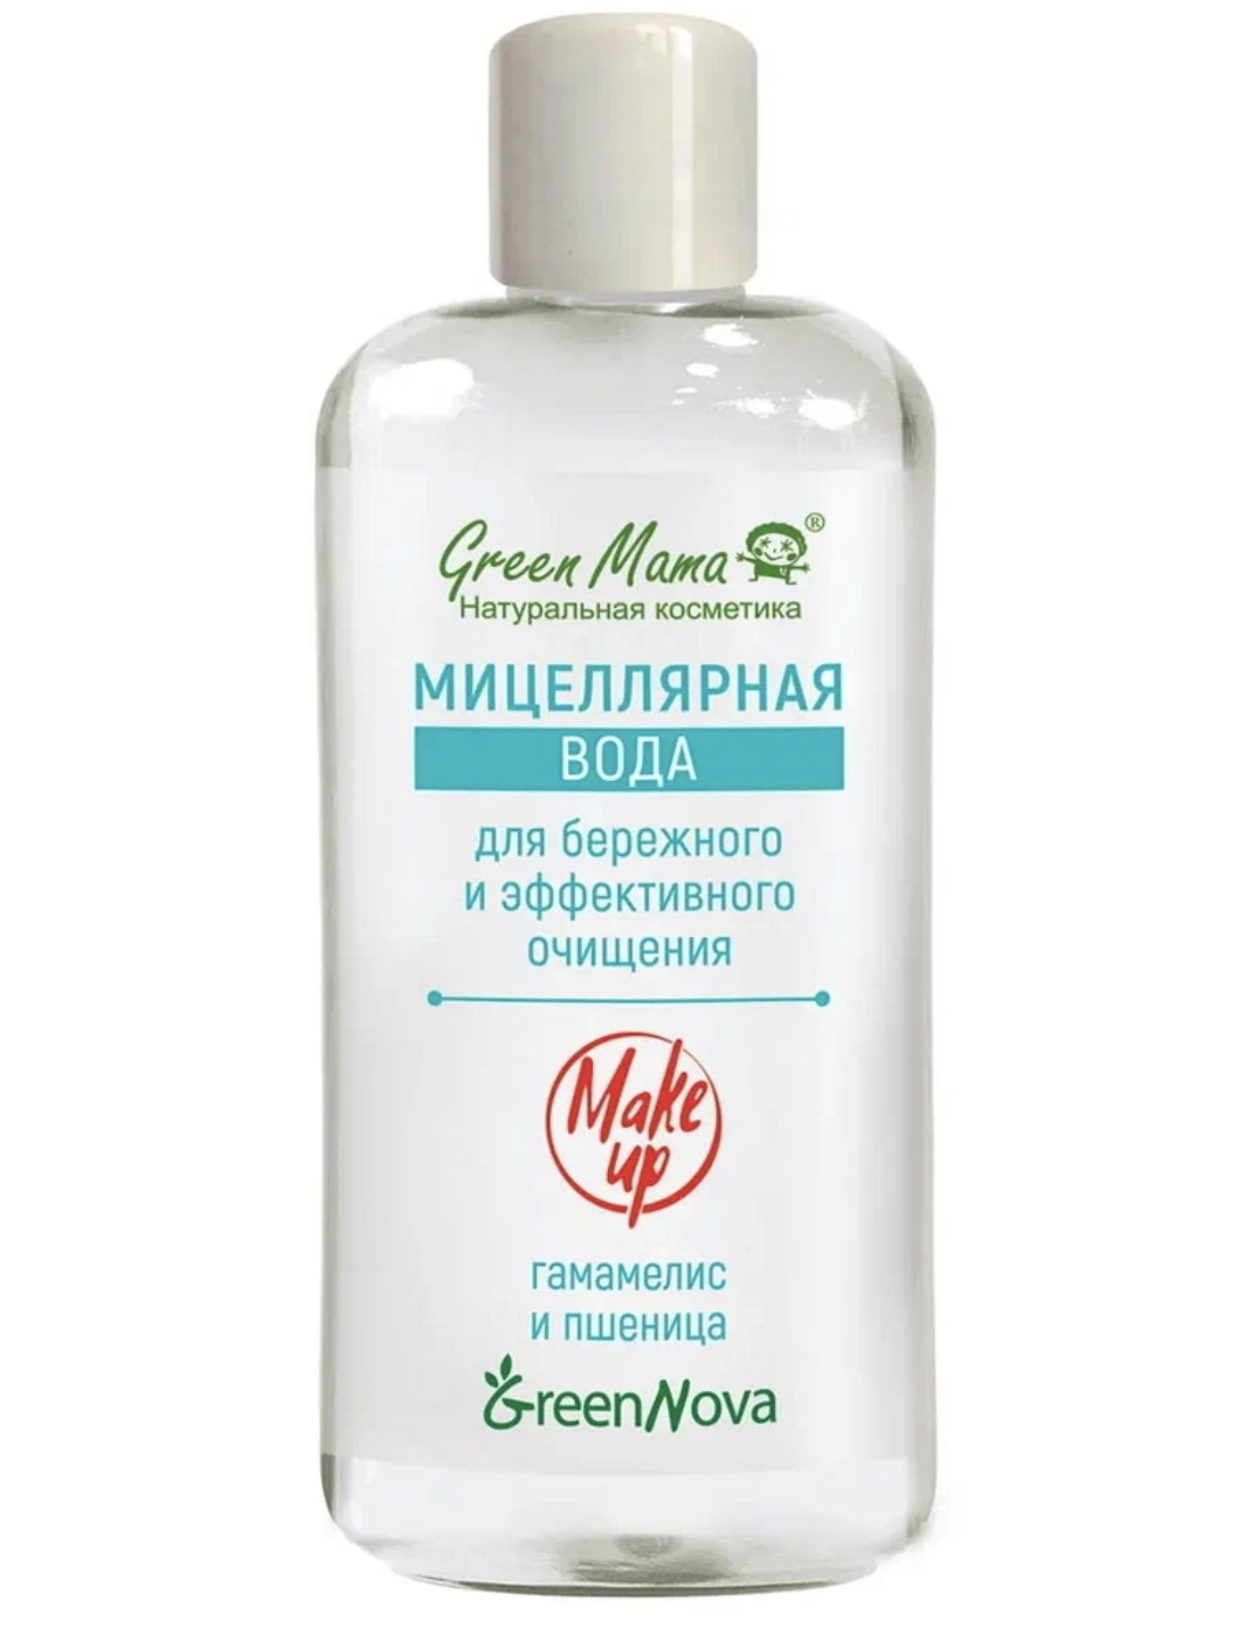 картинка Грин Мама / Green Mama - Мицеллярная вода Natural Skin Care Гамамелис и пшеница 500 мл